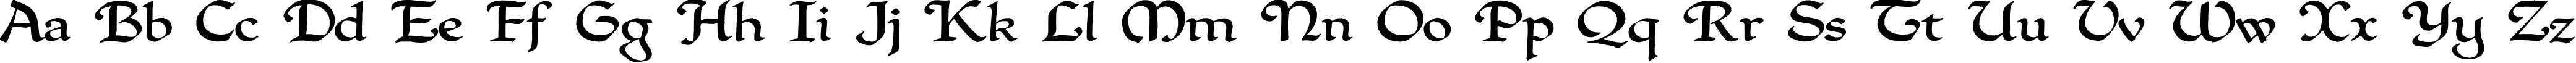 Пример написания английского алфавита шрифтом QuillPerpendicularWide